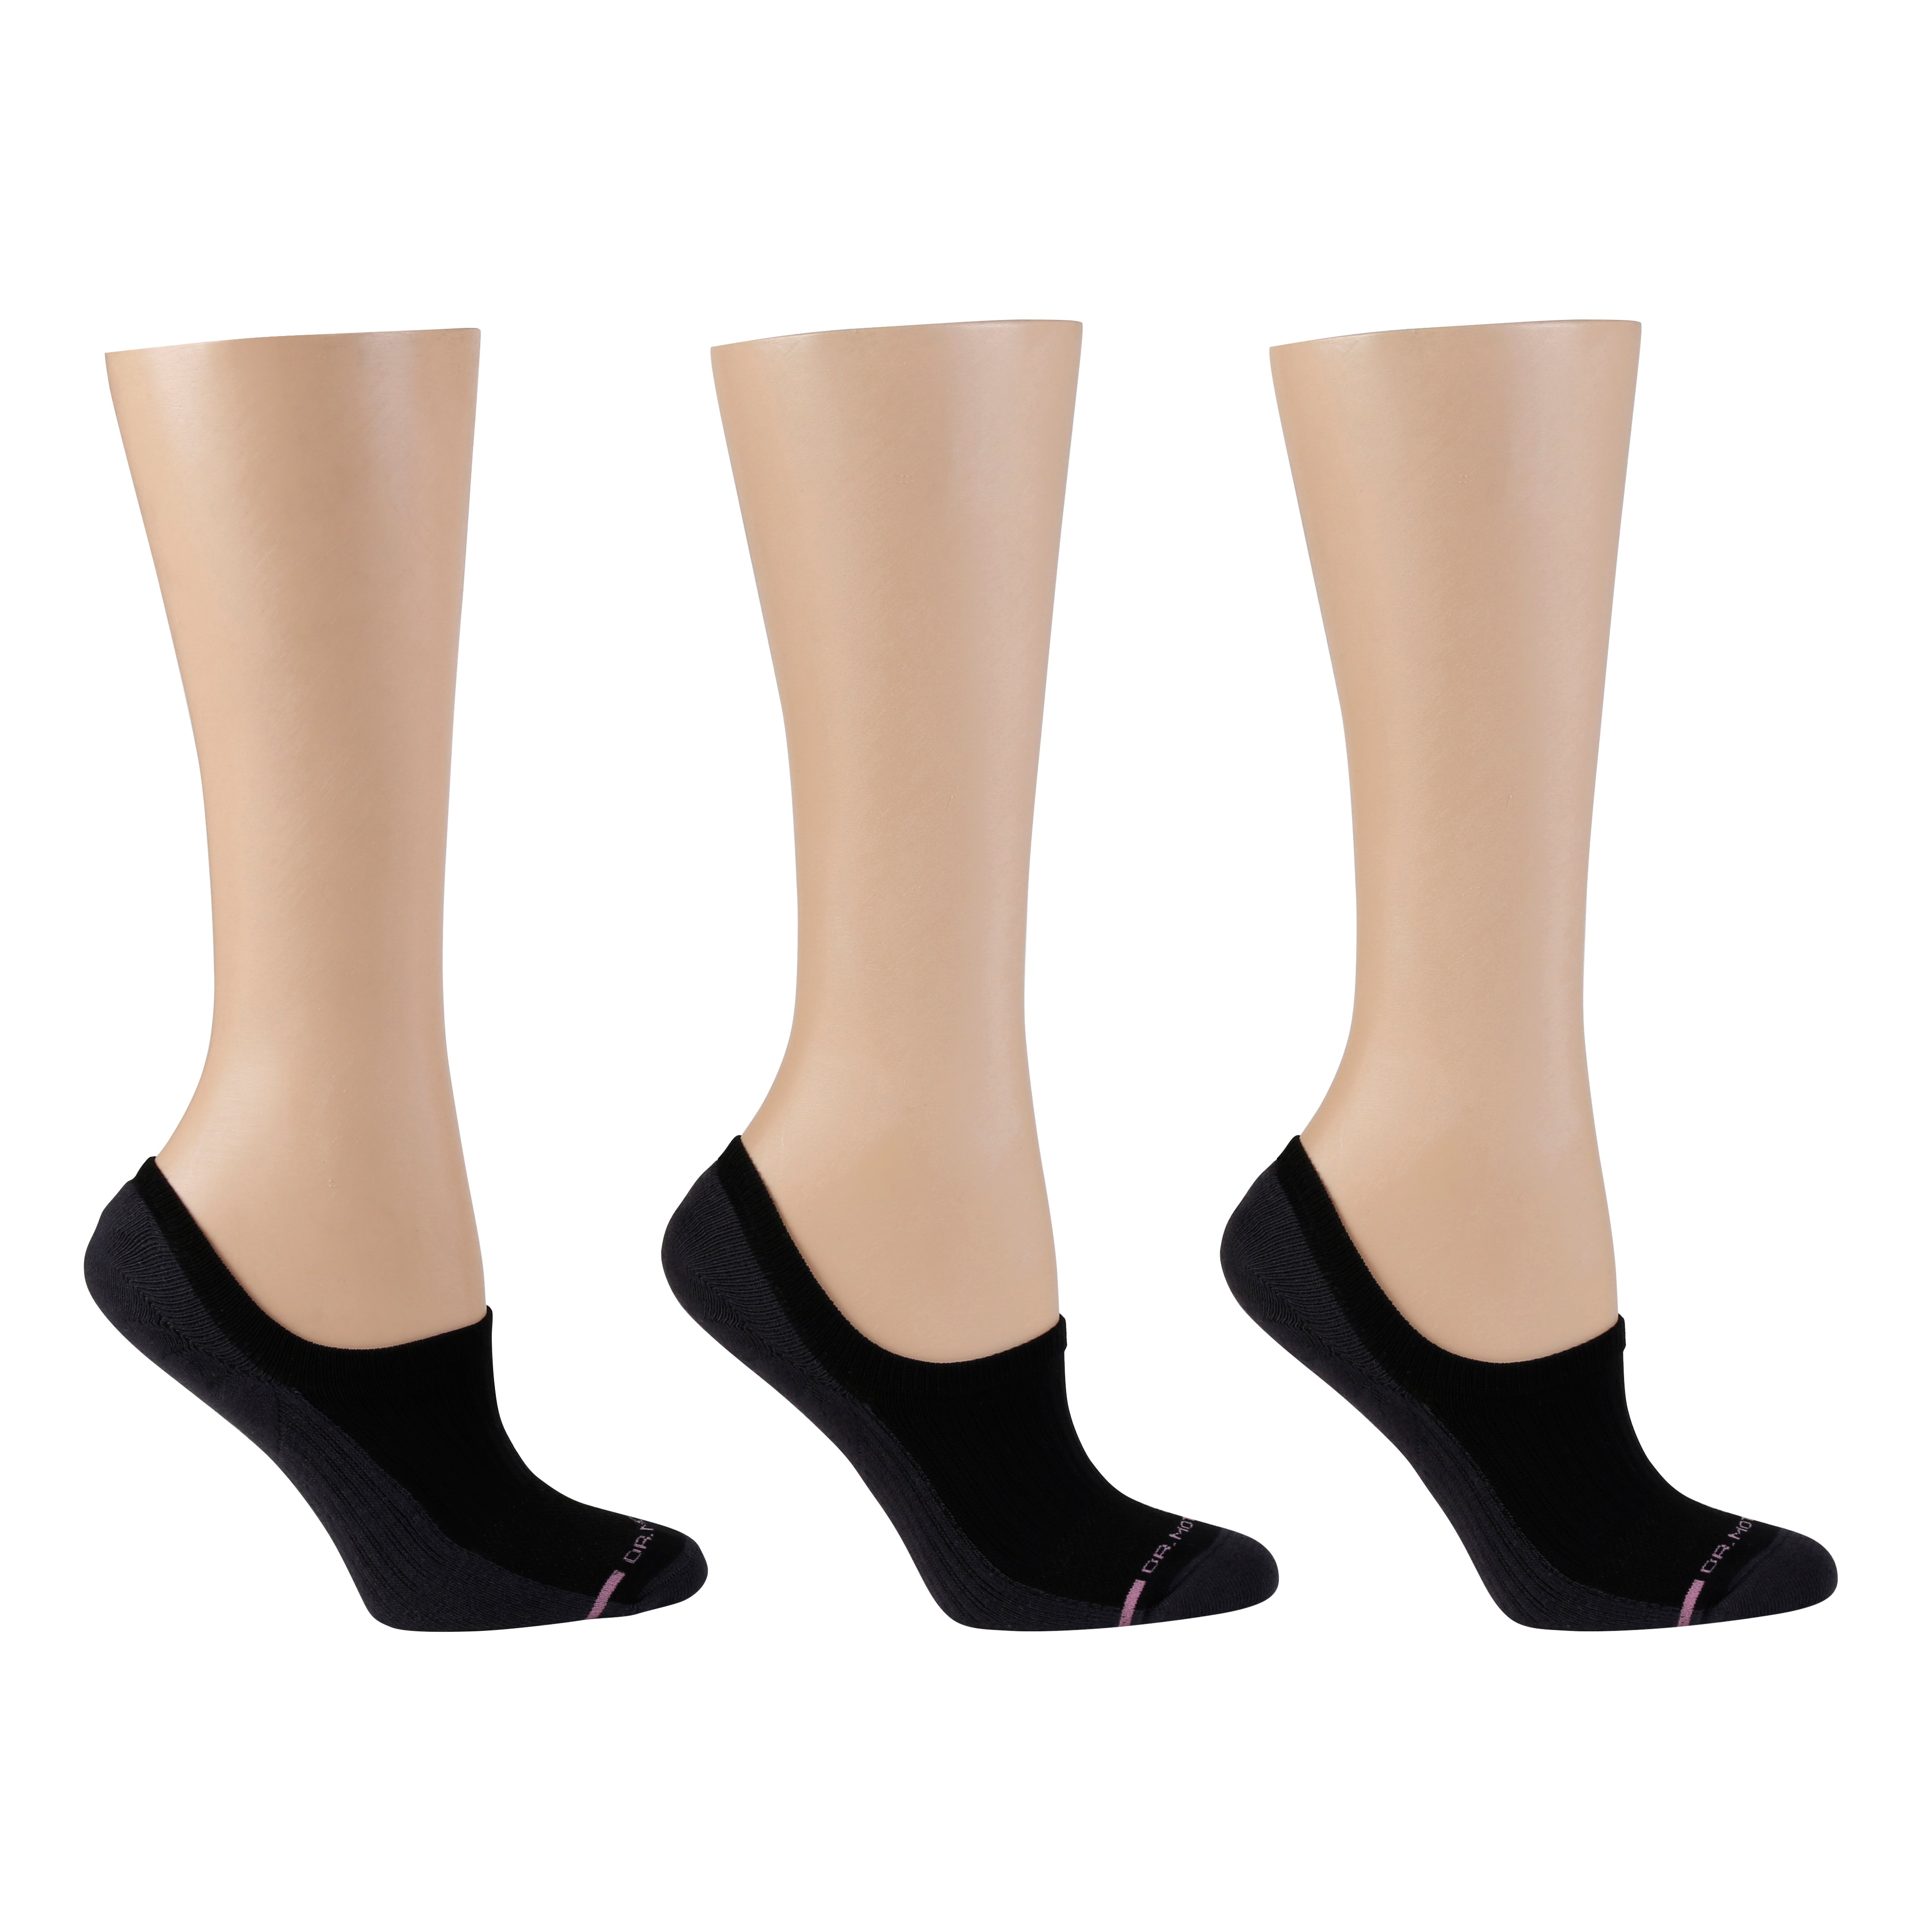 Liner Compression Socks For Women, Dr. Motion